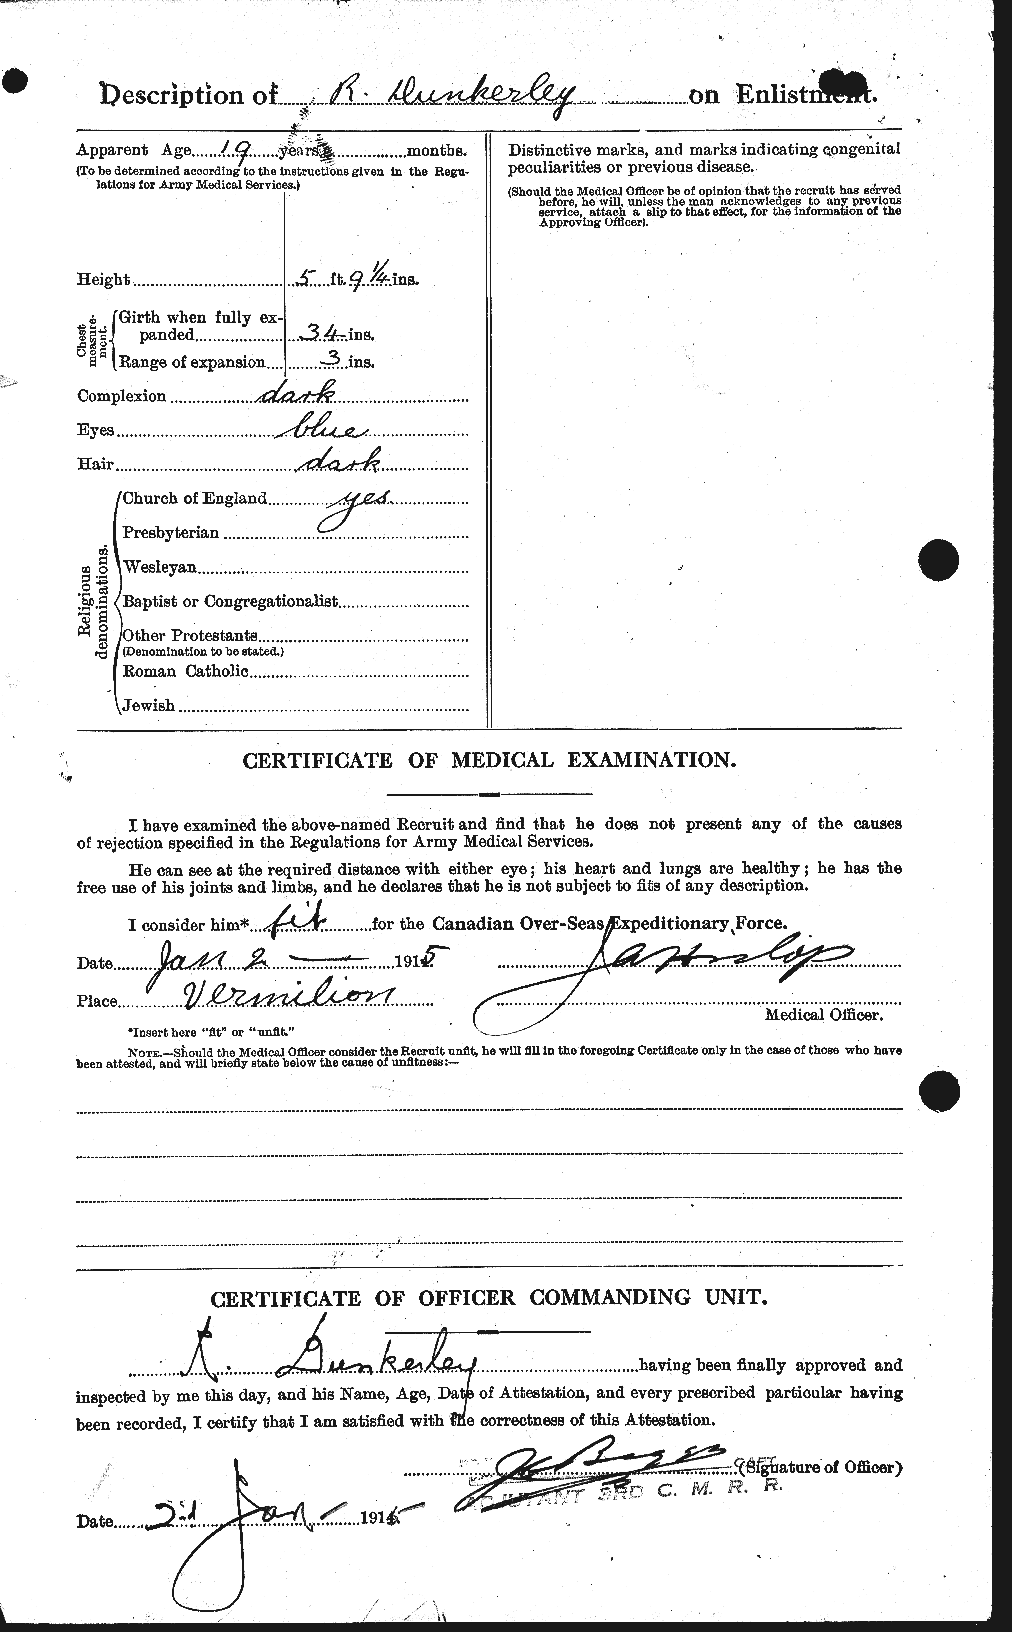 Dossiers du Personnel de la Première Guerre mondiale - CEC 303640b